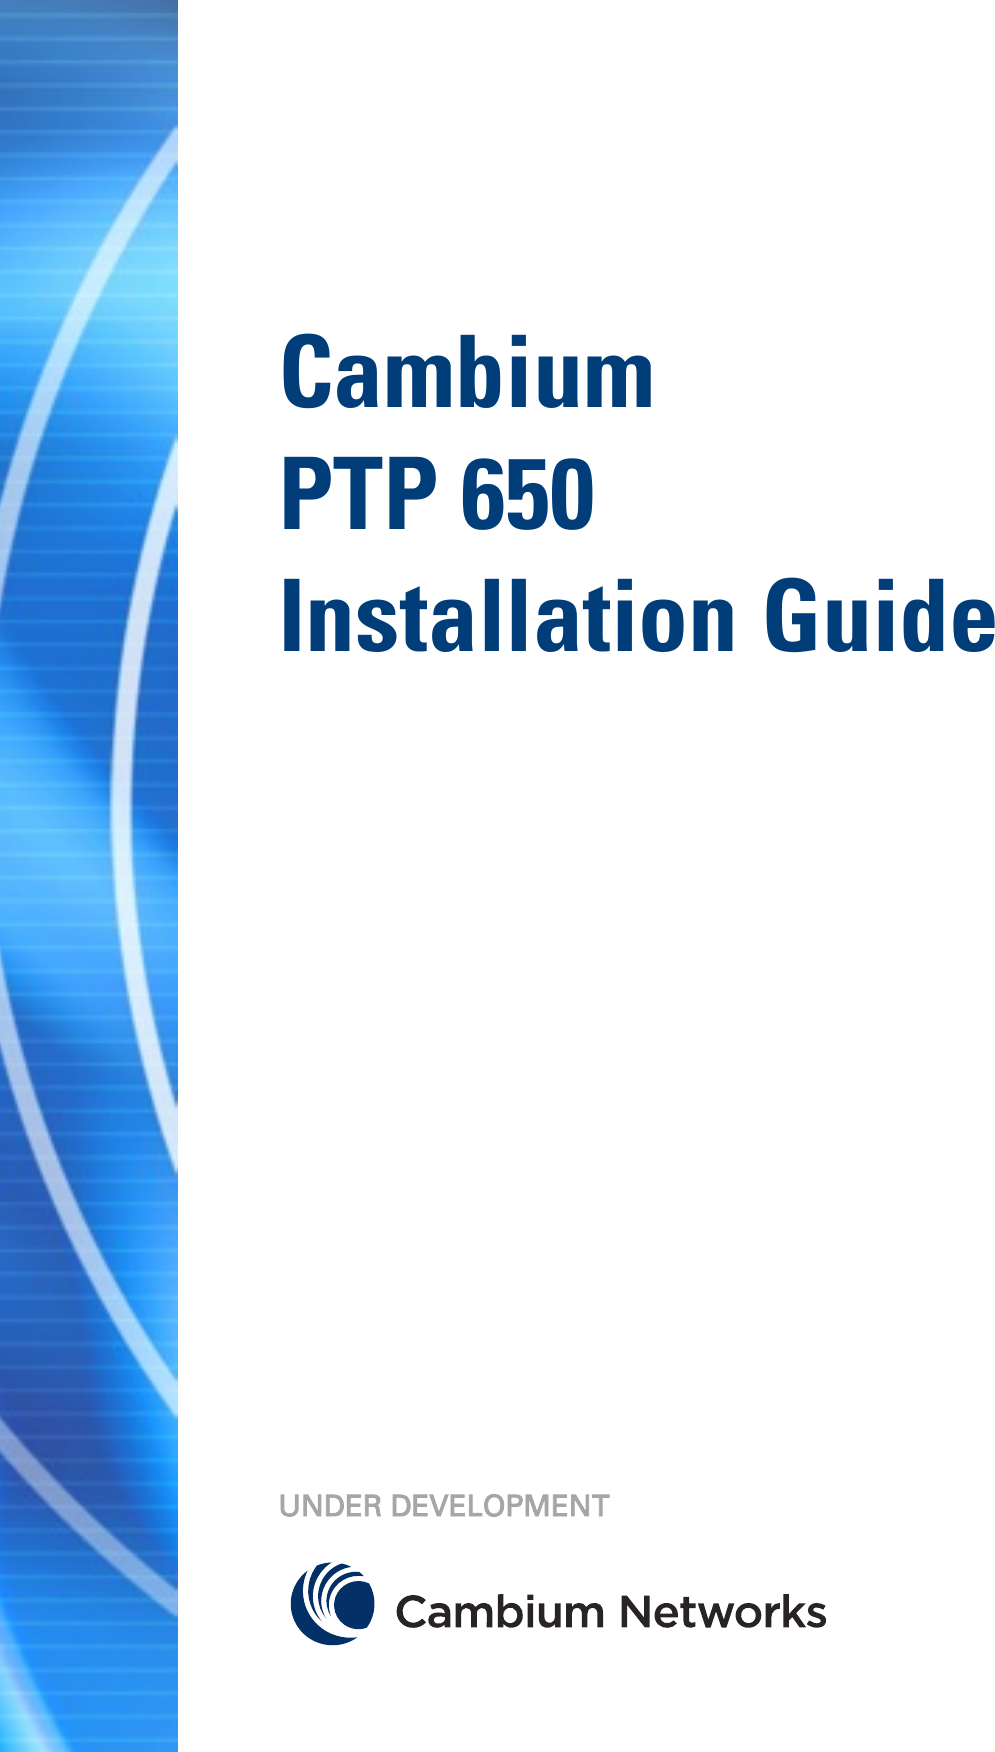       Cambium  PTP 650  Installation Guide                  UNDER DEVELOPMENT  